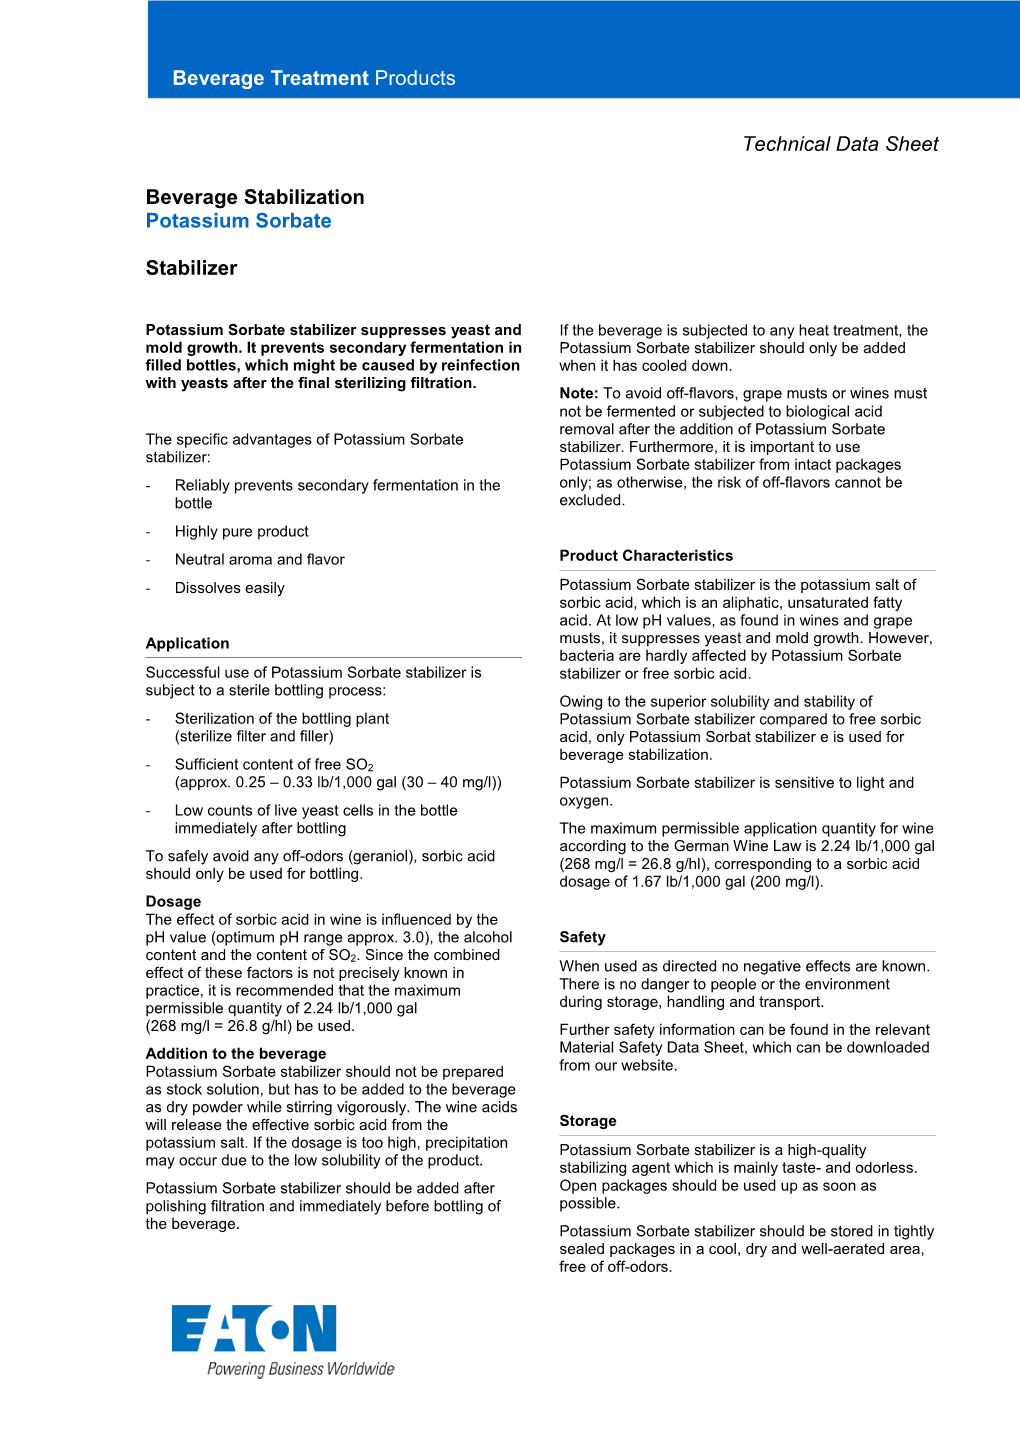 Eaton Potassium Sorbate Technical Data Sheet EN